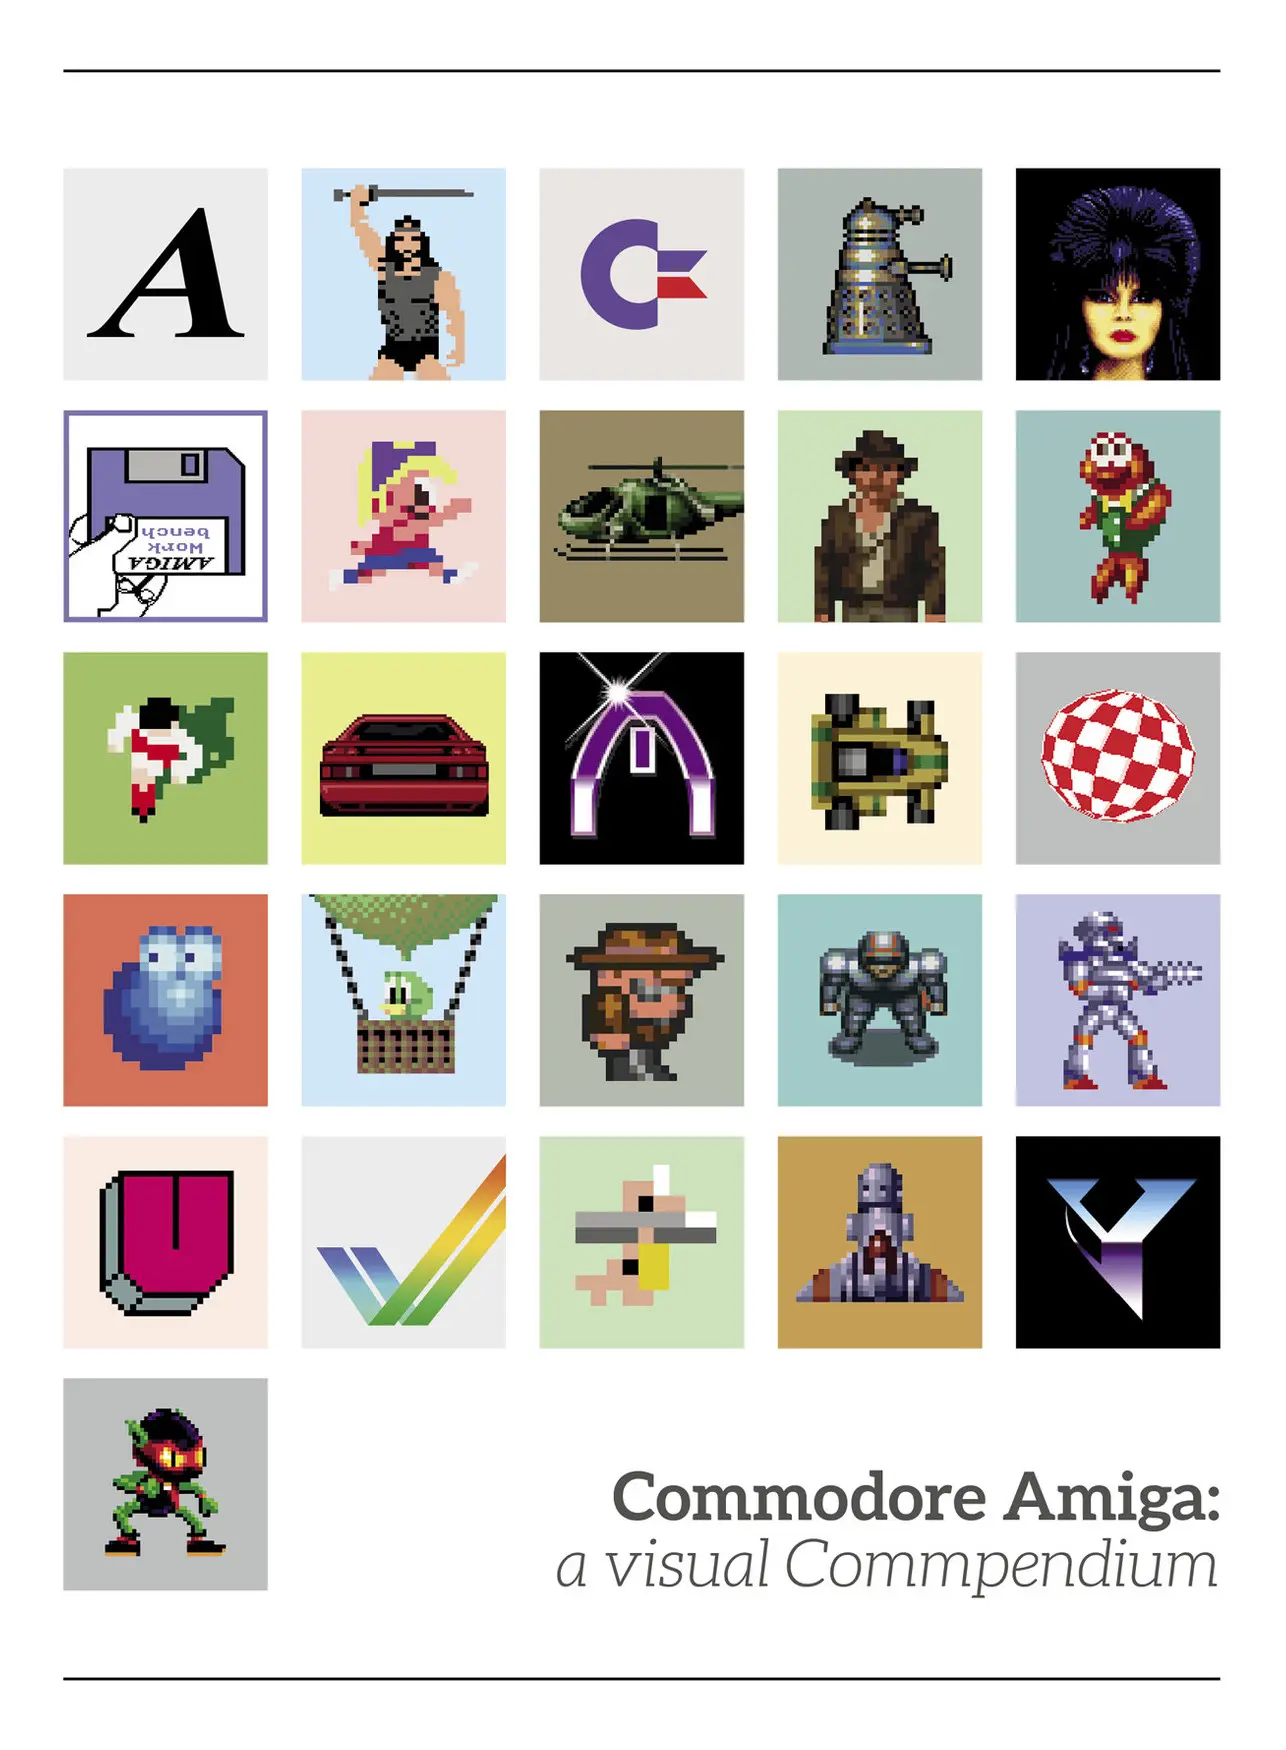 Commodore Amiga: a visual Compendium by Sam Dyer